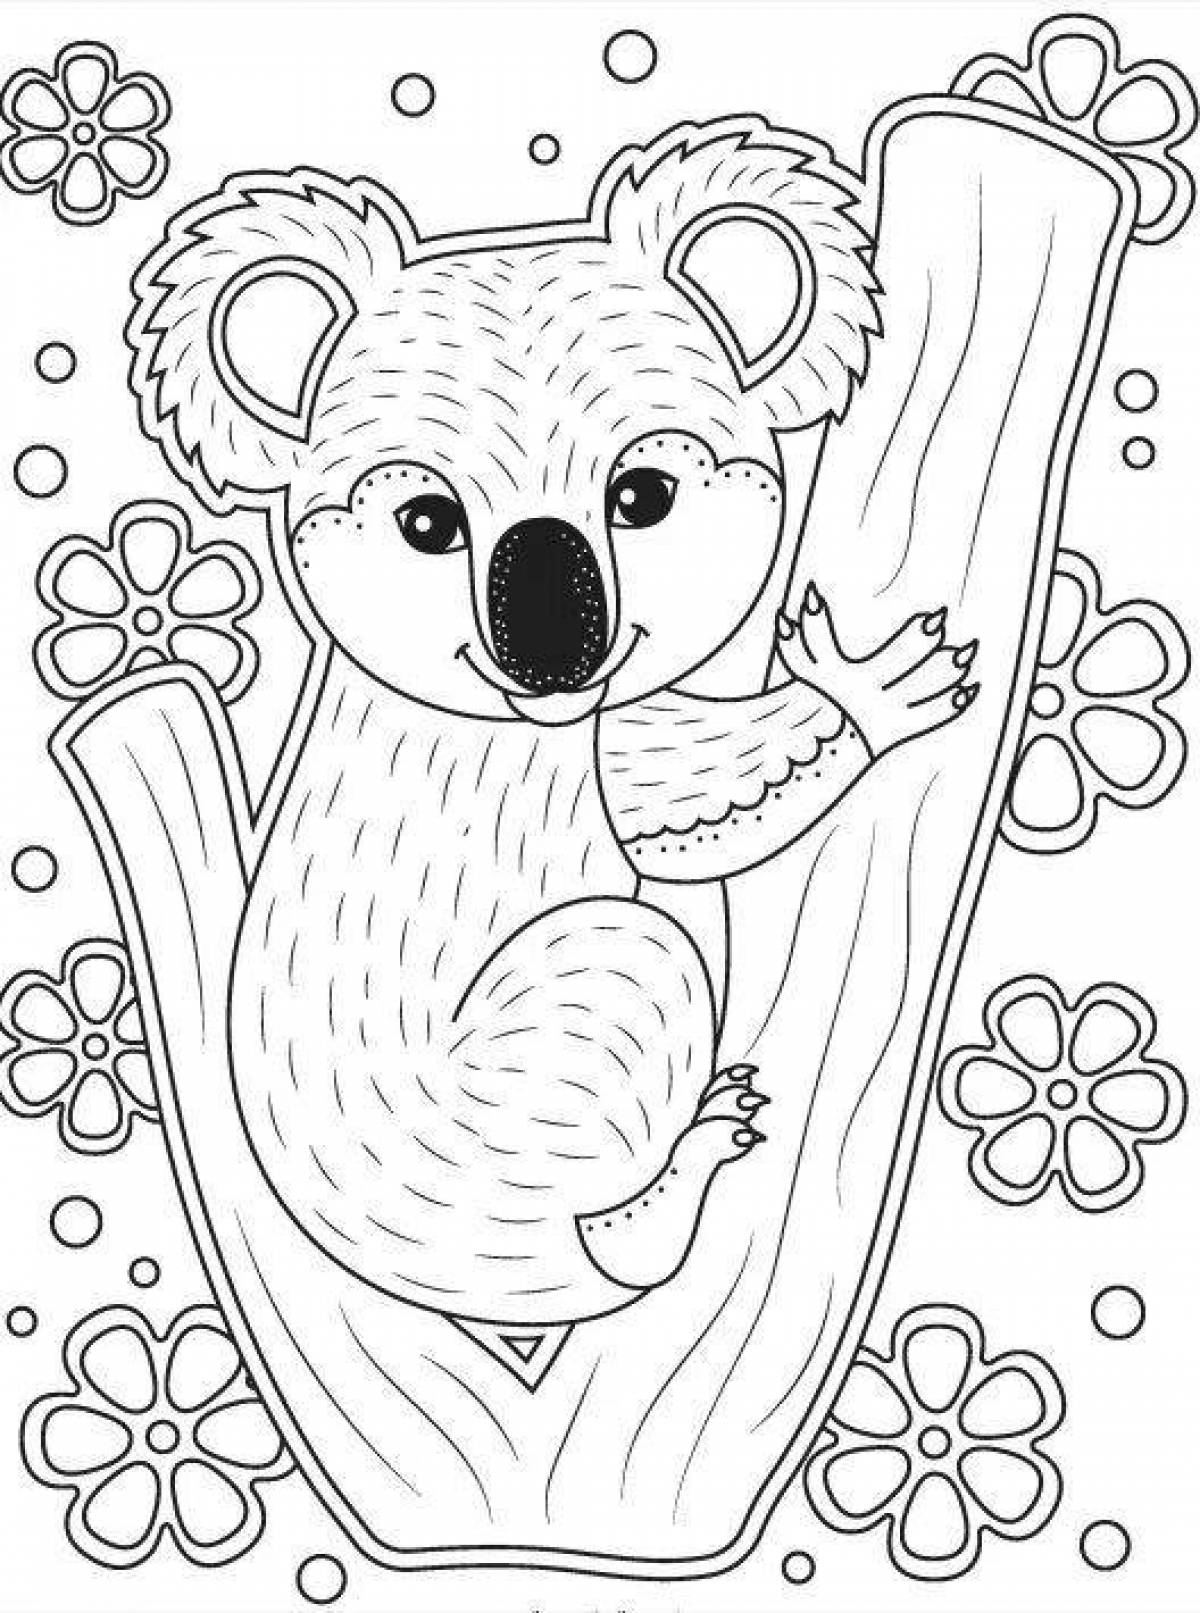 Развлекательная раскраска коала для детей